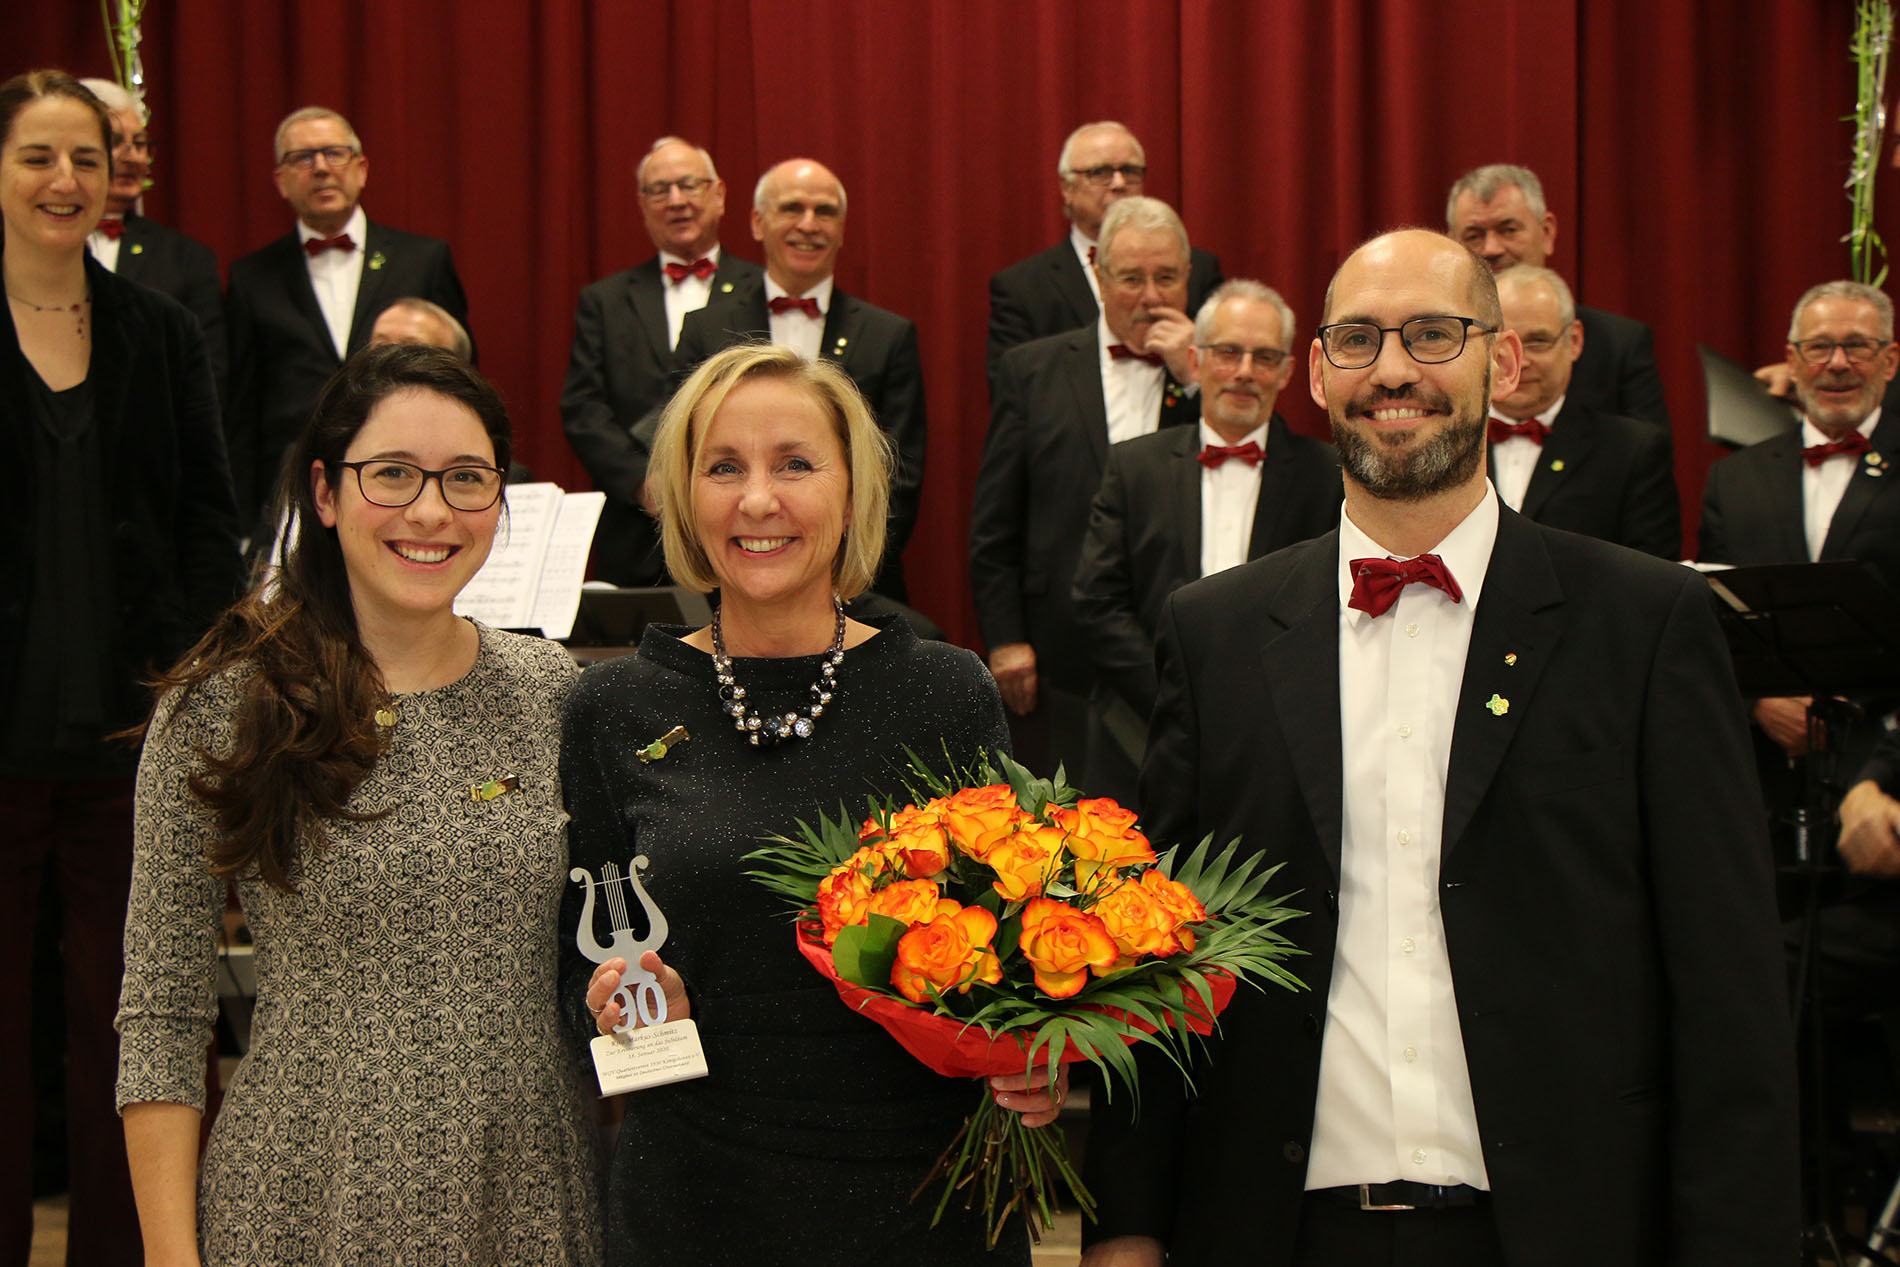 Romina Plosnker MdL (Protektorin 2019) ehrte ihre Nachfolgerin Rita Markus-Schmitz (Protektorin 2020): Beide freuten sich an diesem Abend, gemeinsam mit dem stellvertr. Vorsitzenden Björn Hackbarth, den 90. Geburtstag des MGV Quartettverein feiern zu können.